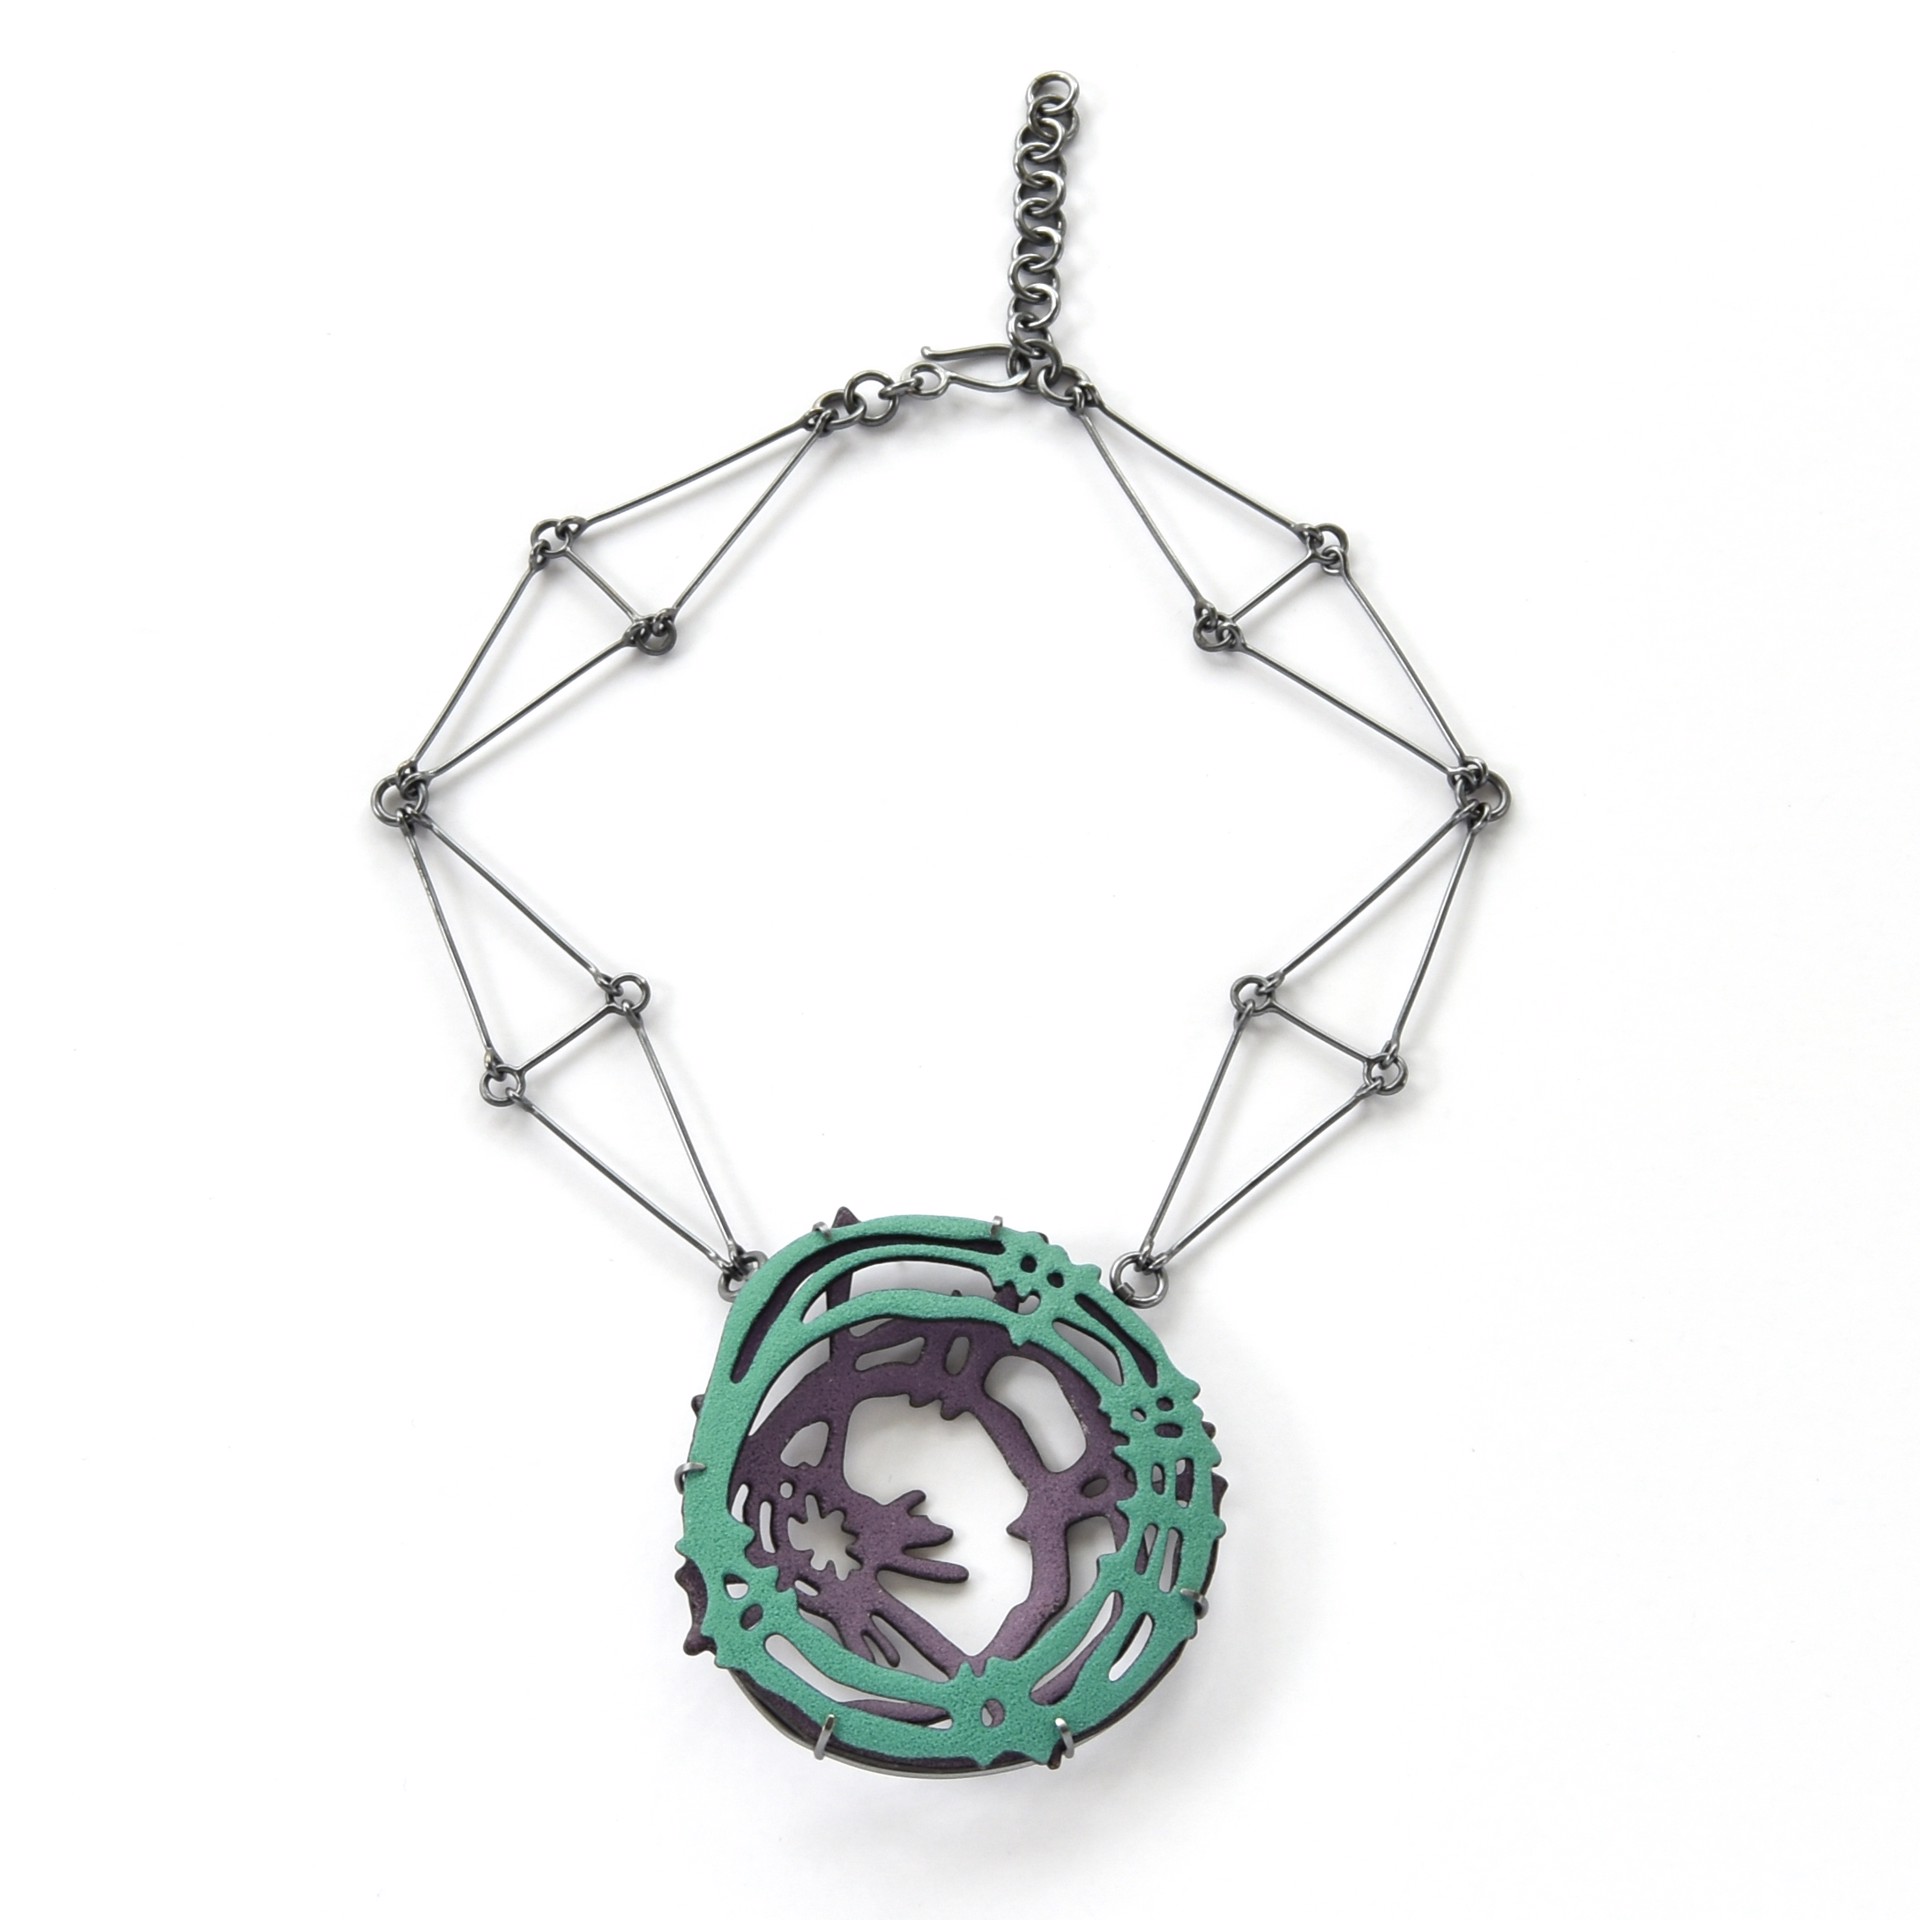 Double Nest Necklace by Joanna Nealey